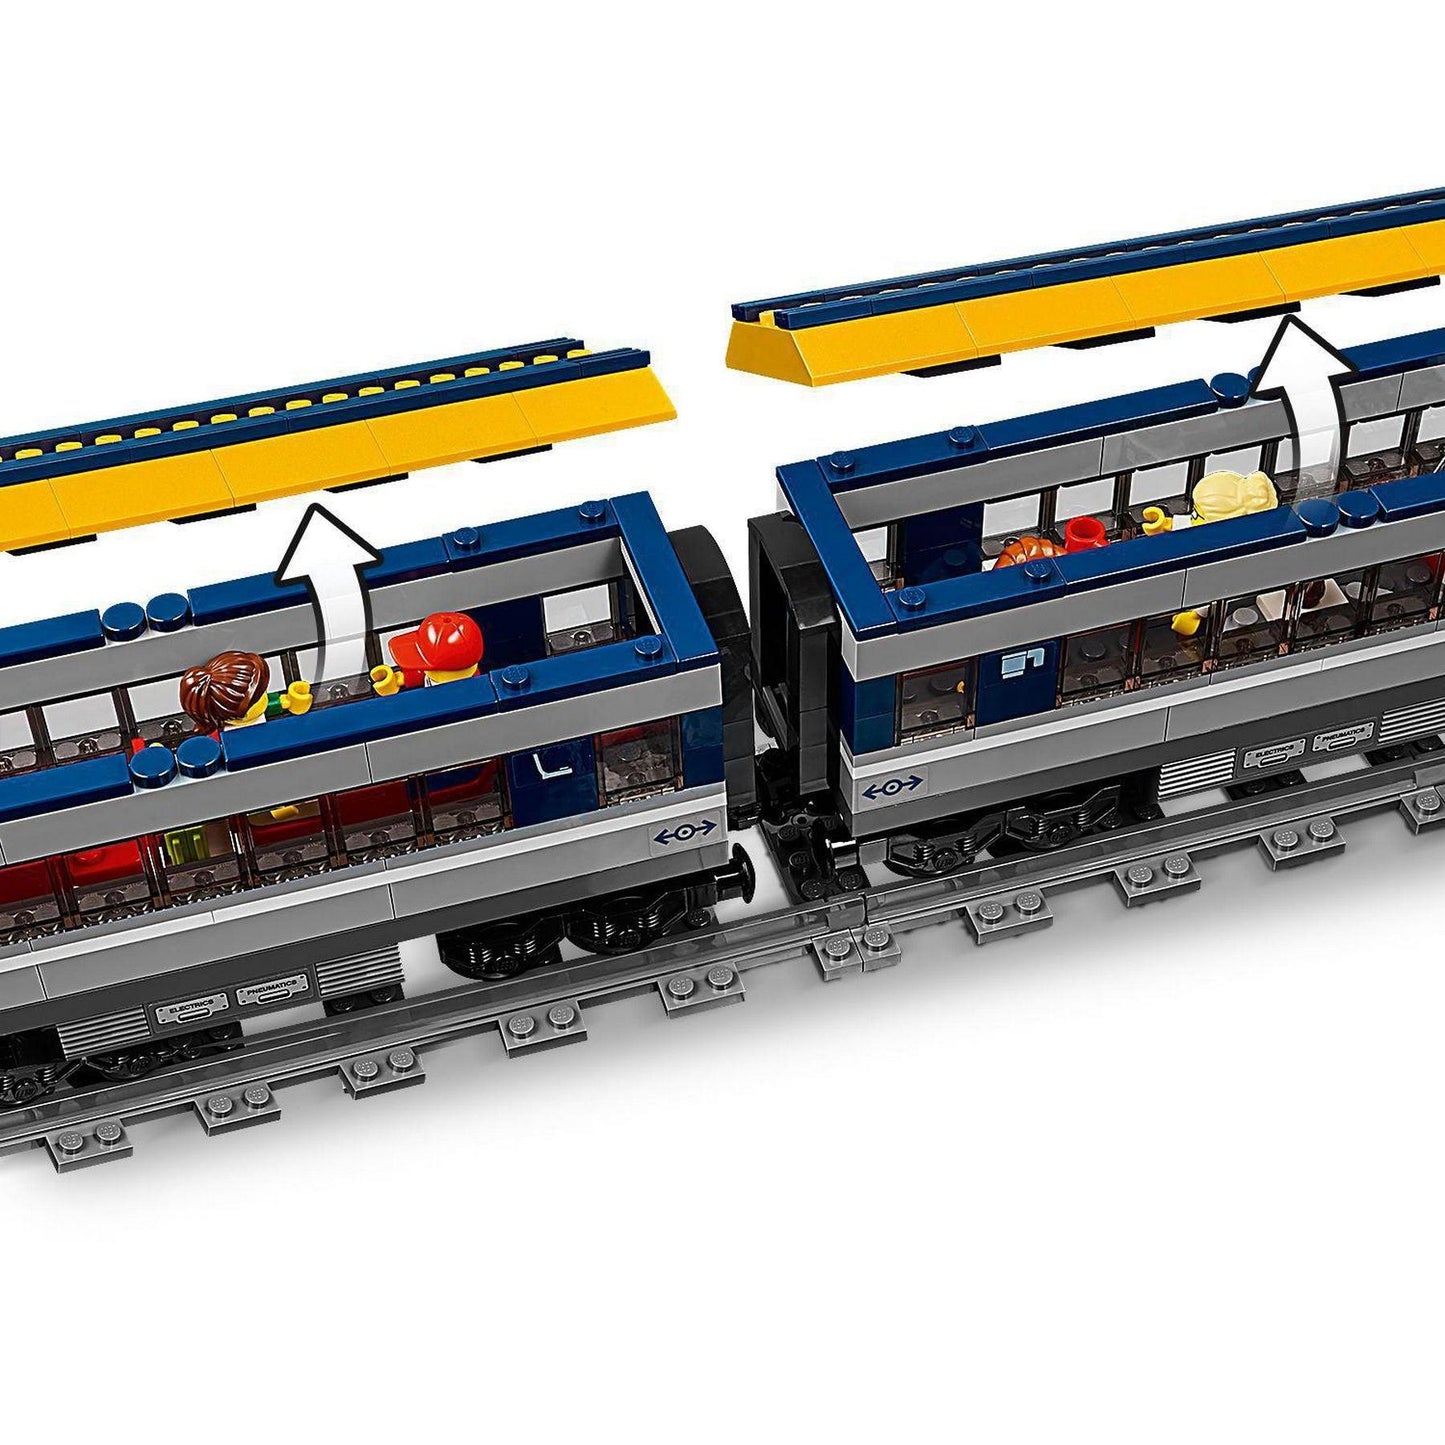 LEGO Passagiers trein 60197 City | 2TTOYS ✓ Official shop<br>